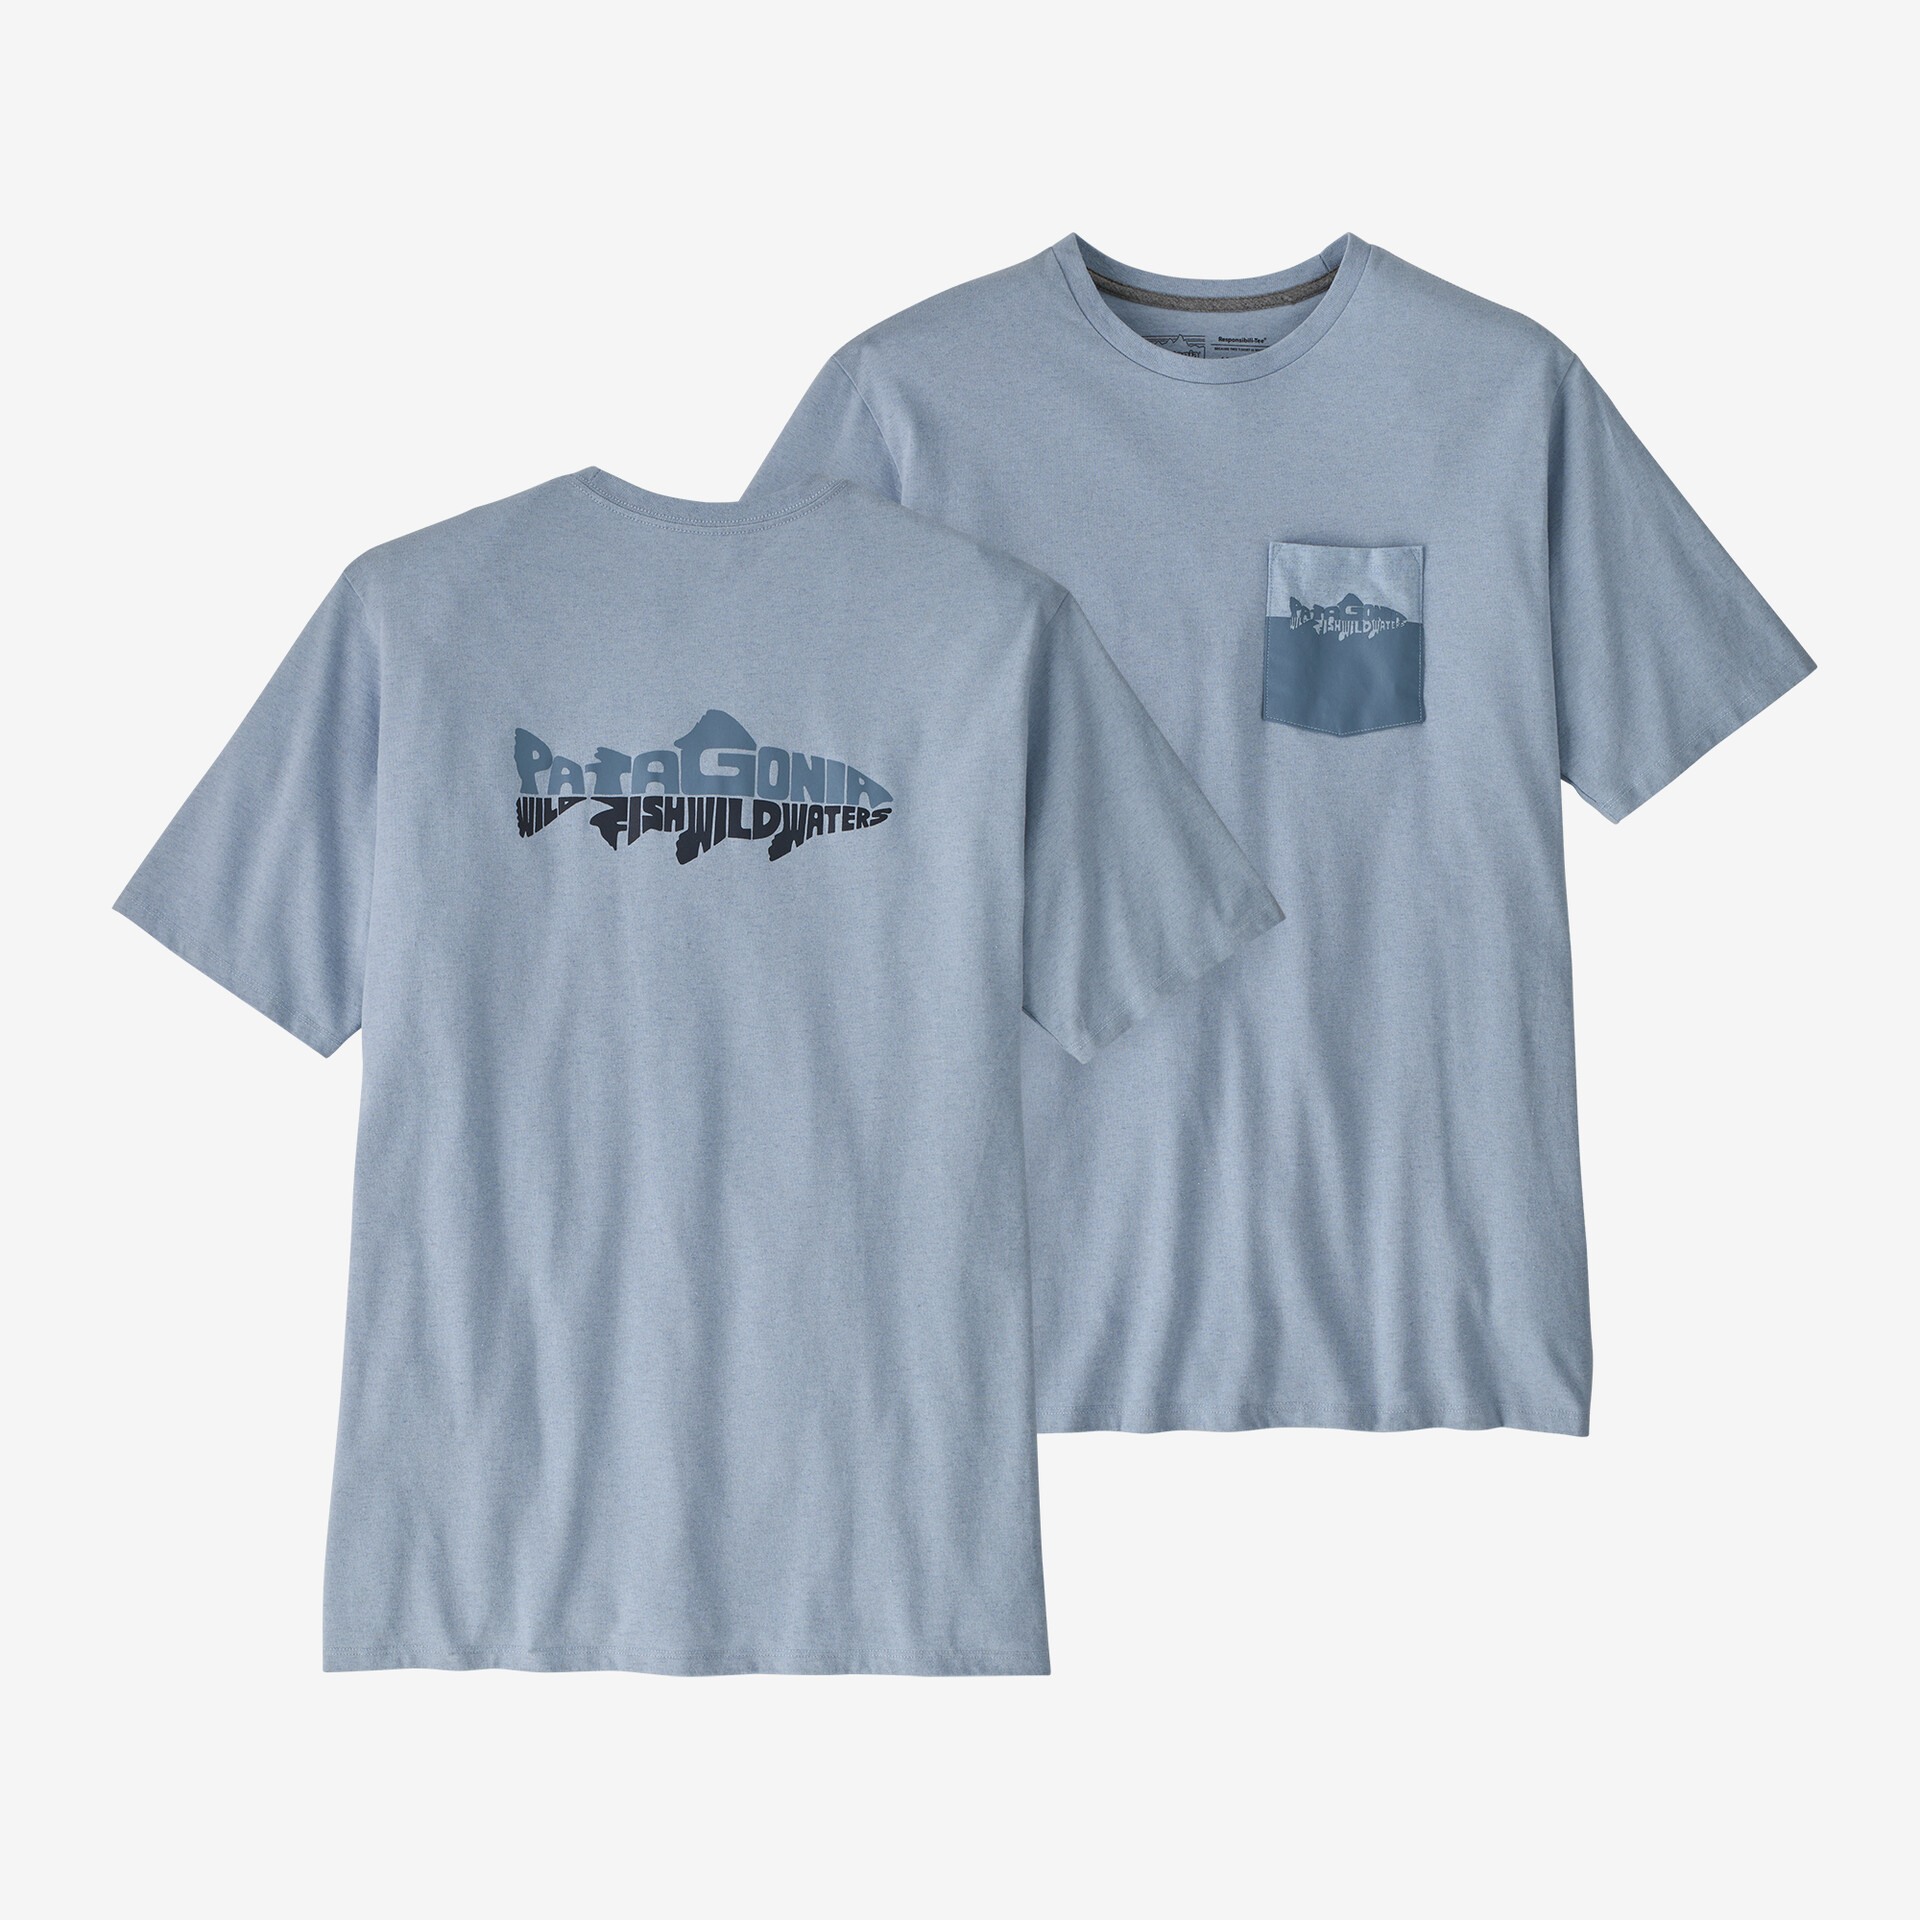 цена Мужская ответственная футболка с карманом Wild Waterline Patagonia, паровой синий